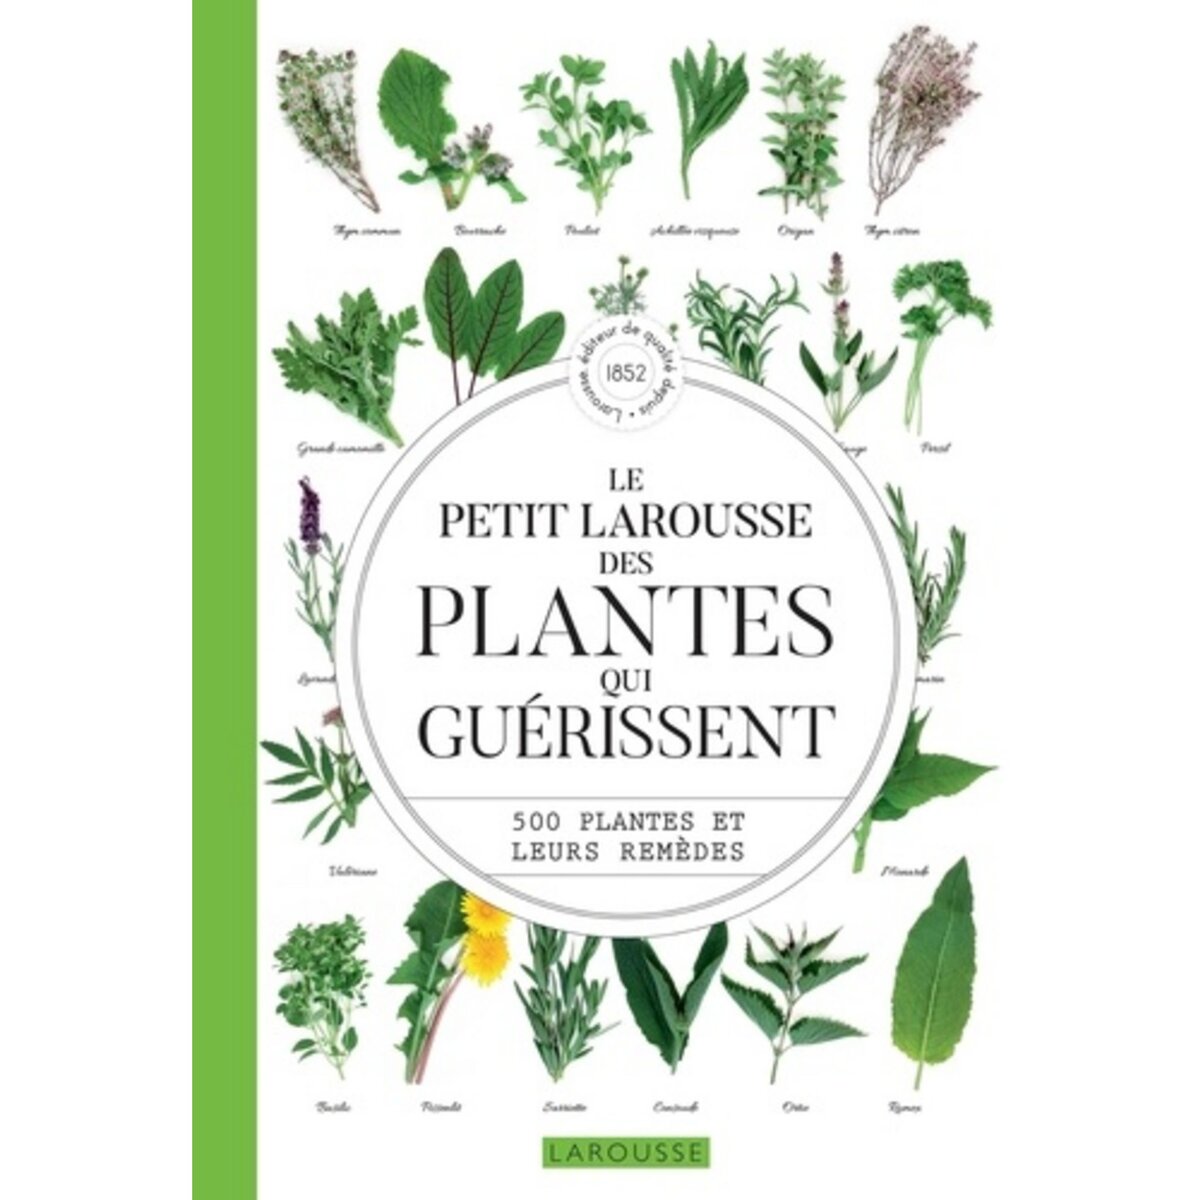  LE PETIT LAROUSSE DES PLANTES QUI GUERISSENT. 500 PLANTES ET LEURS REMEDES, Debuigne Gérard